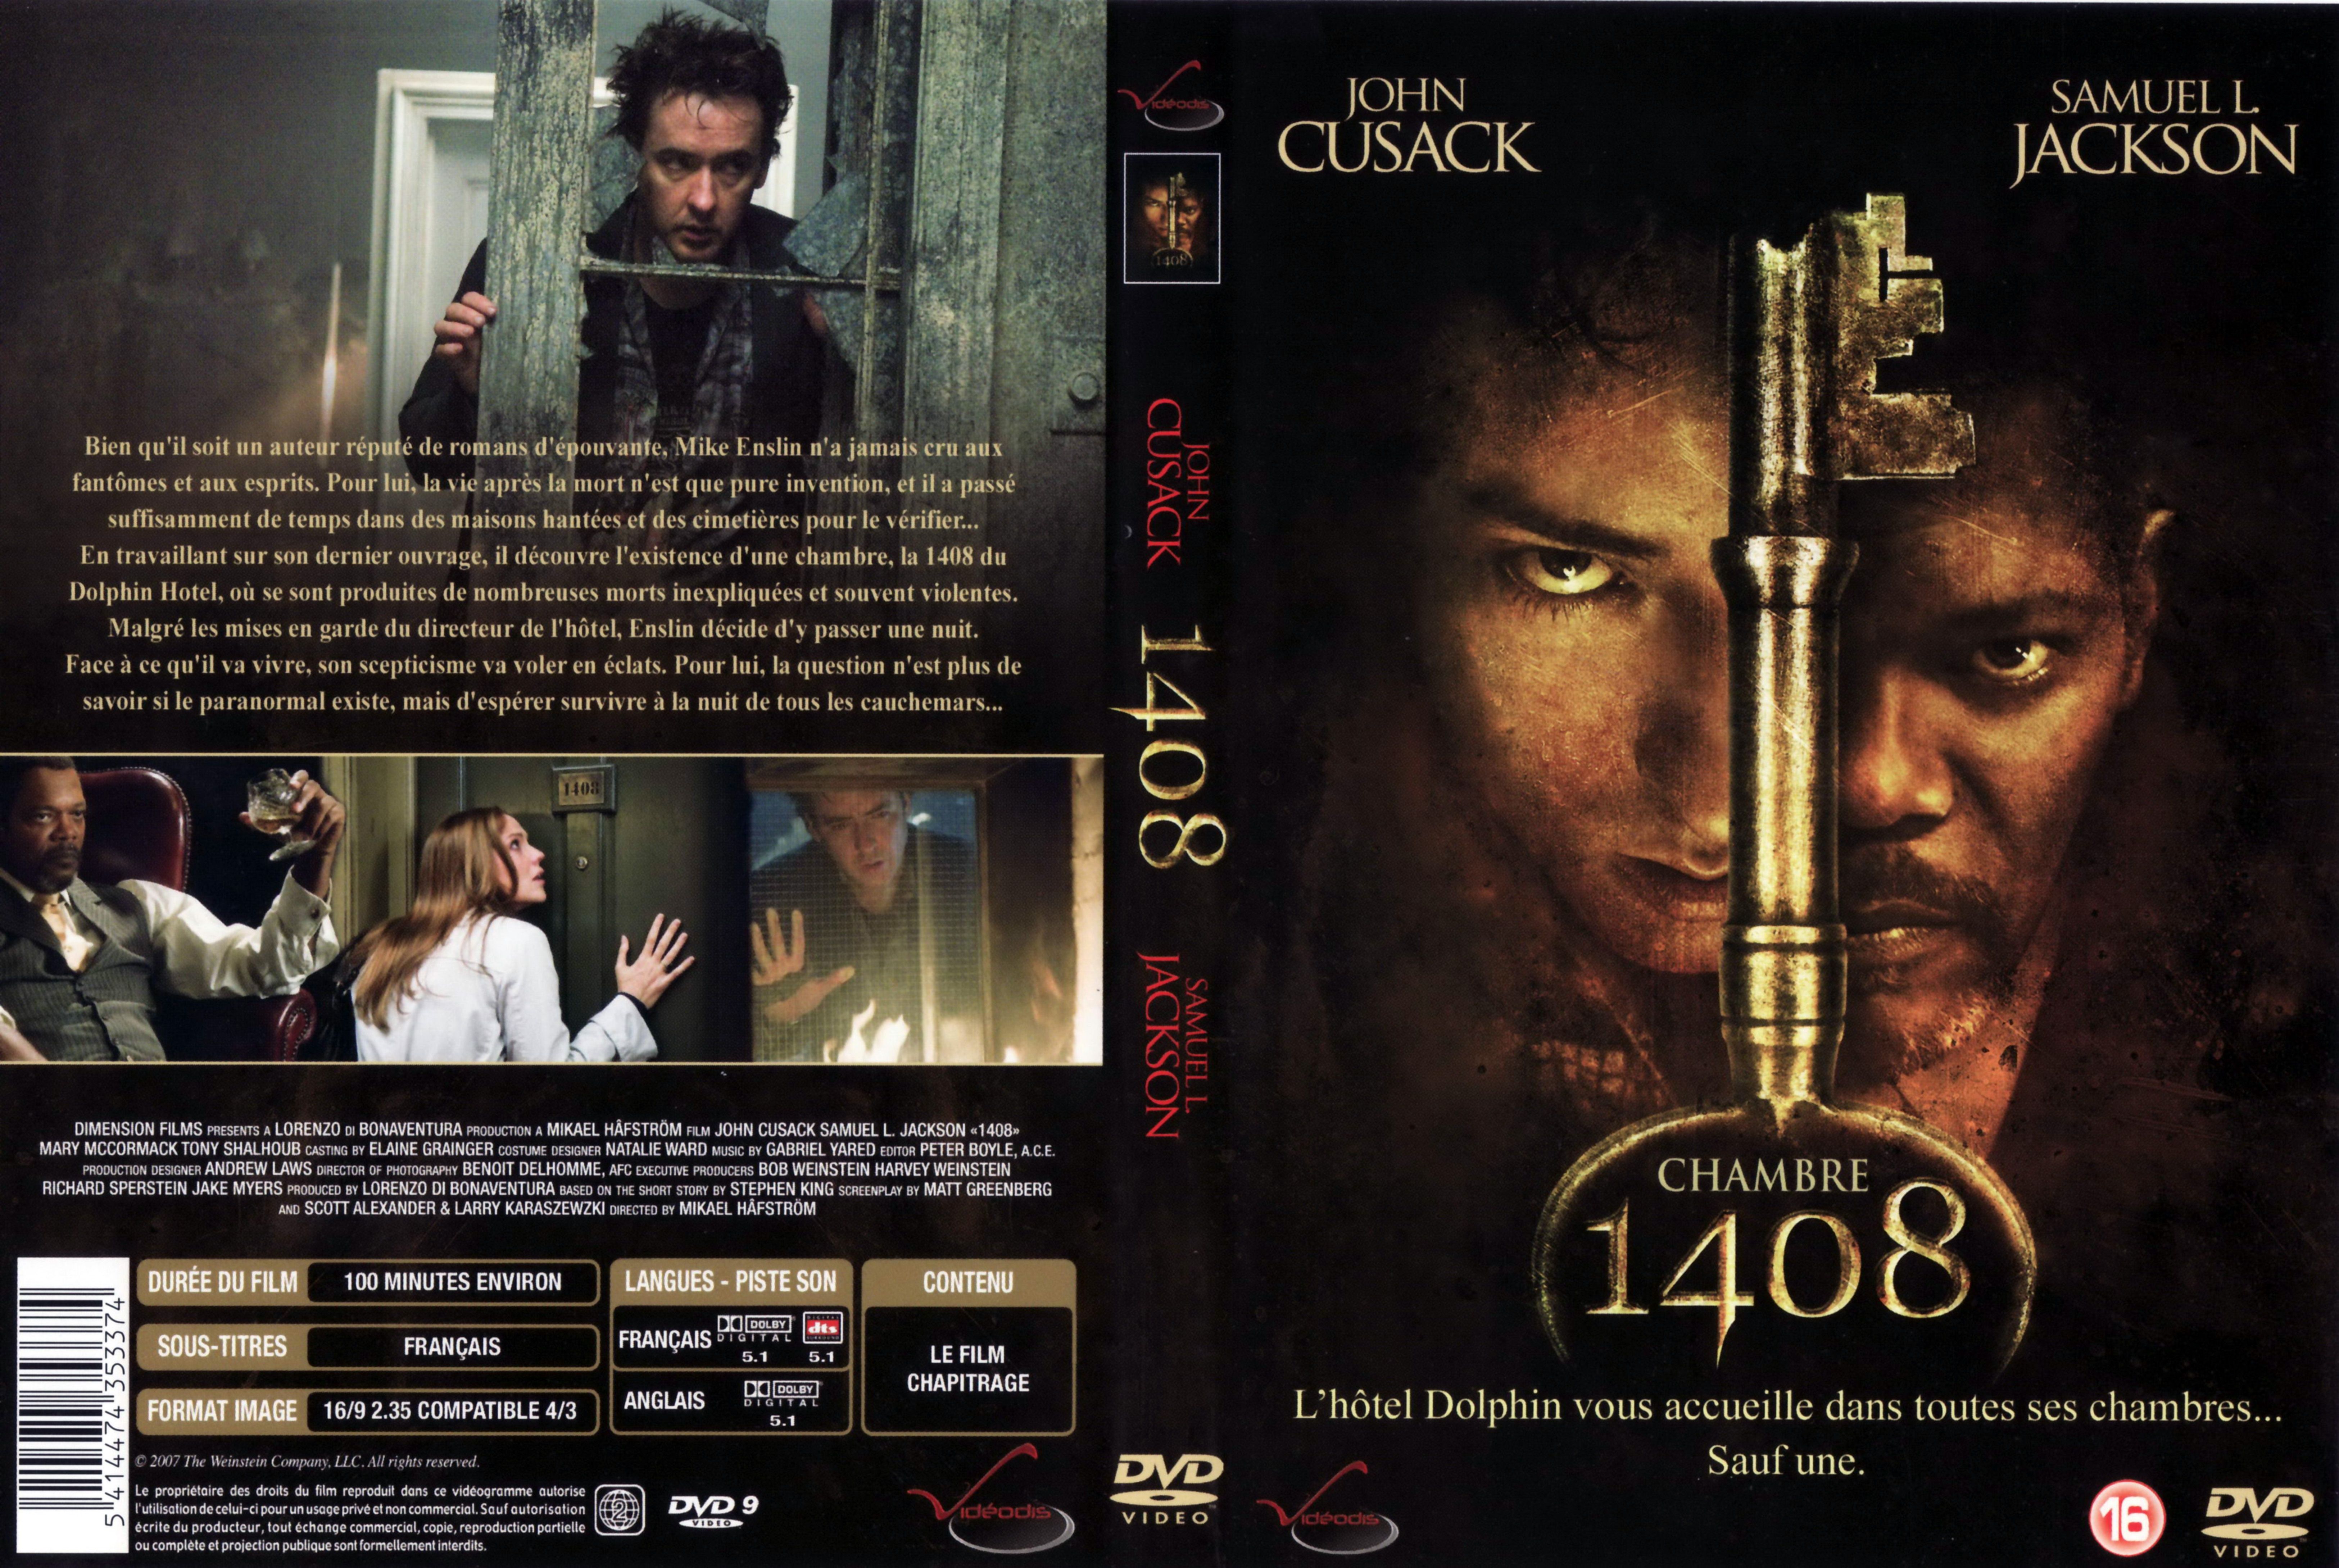 Jaquette DVD de Chambre 1408 v2 Cinéma Passion